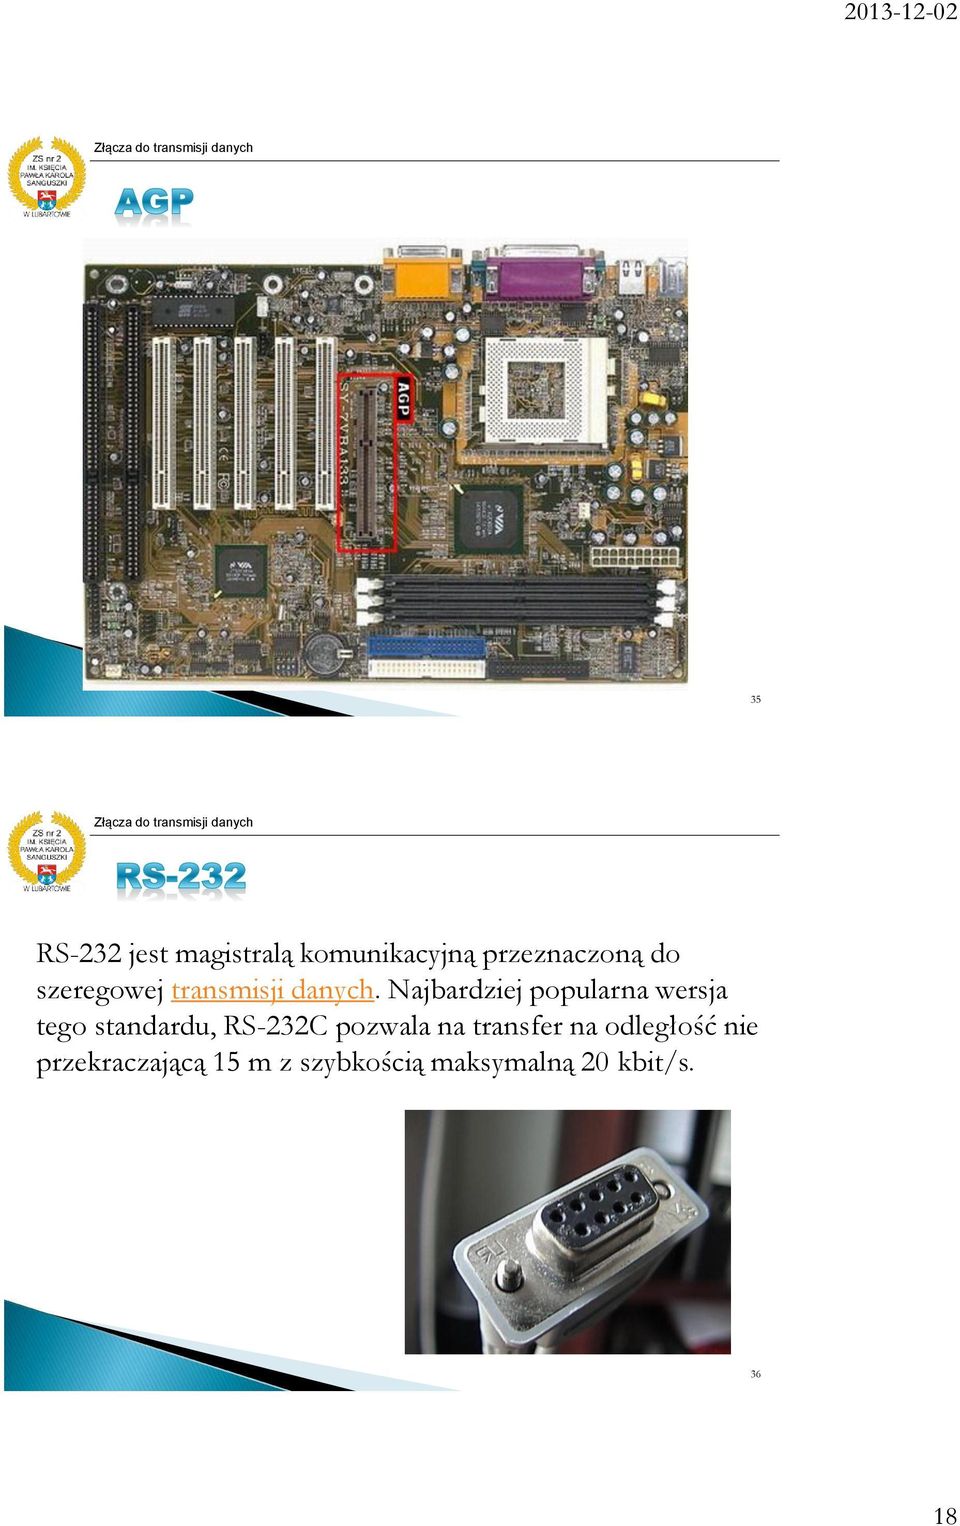 Najbardziej popularna wersja tego standardu, RS-232C